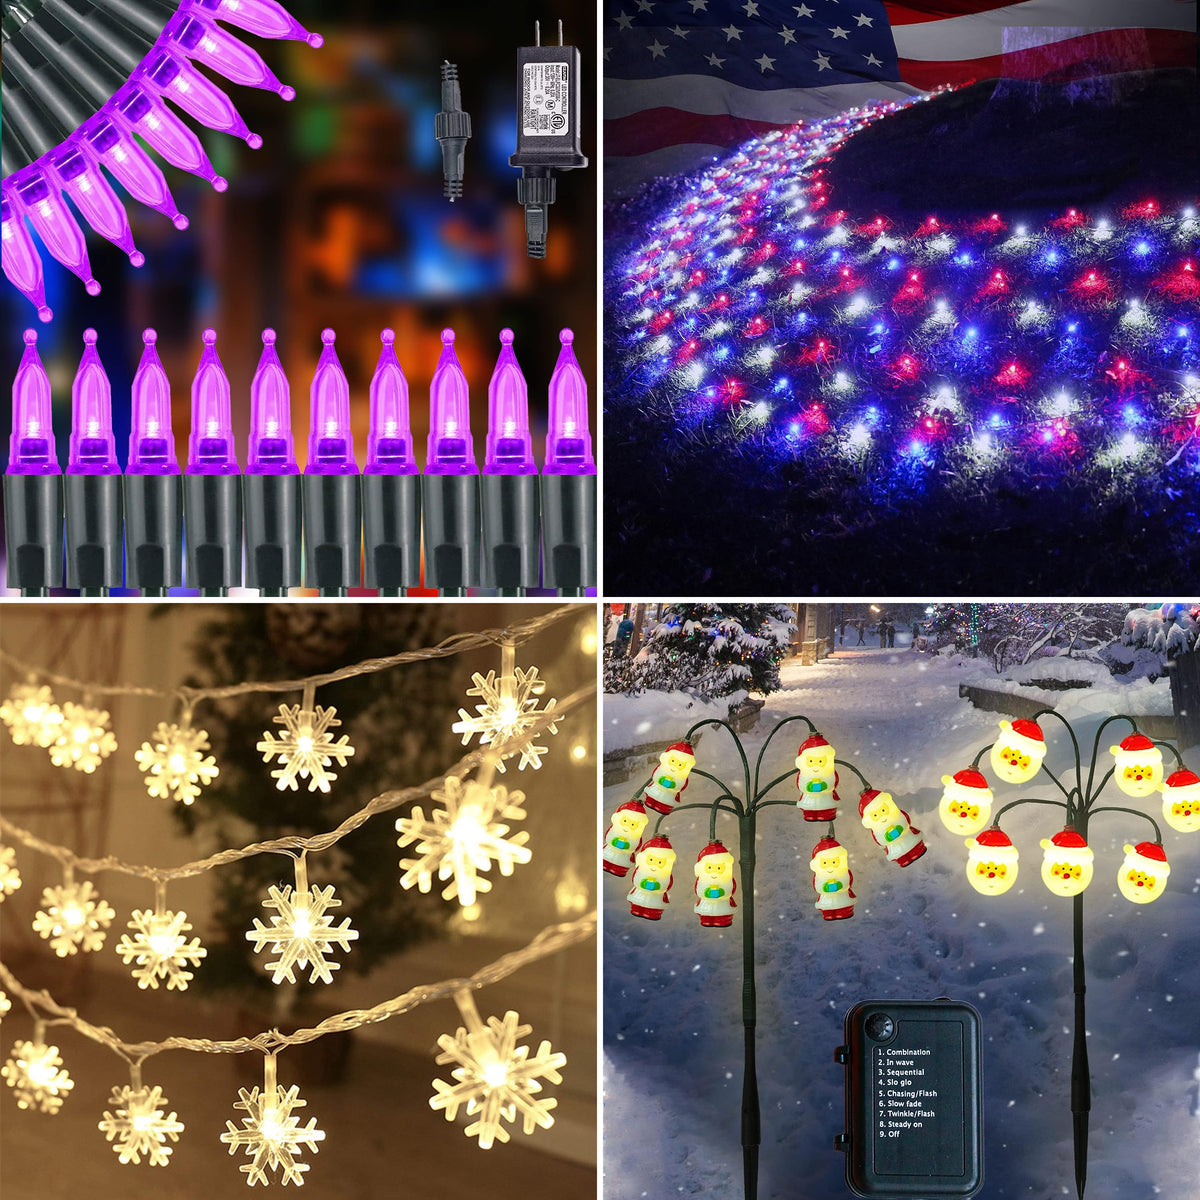 4 Set of Christmas Decorations Lights-66 Ft 200 LED Purple String Lights-300 LED Net Lights-20 Ft 40 LED Snowflake String Lights-14 LED Santa Claus Stake Lights